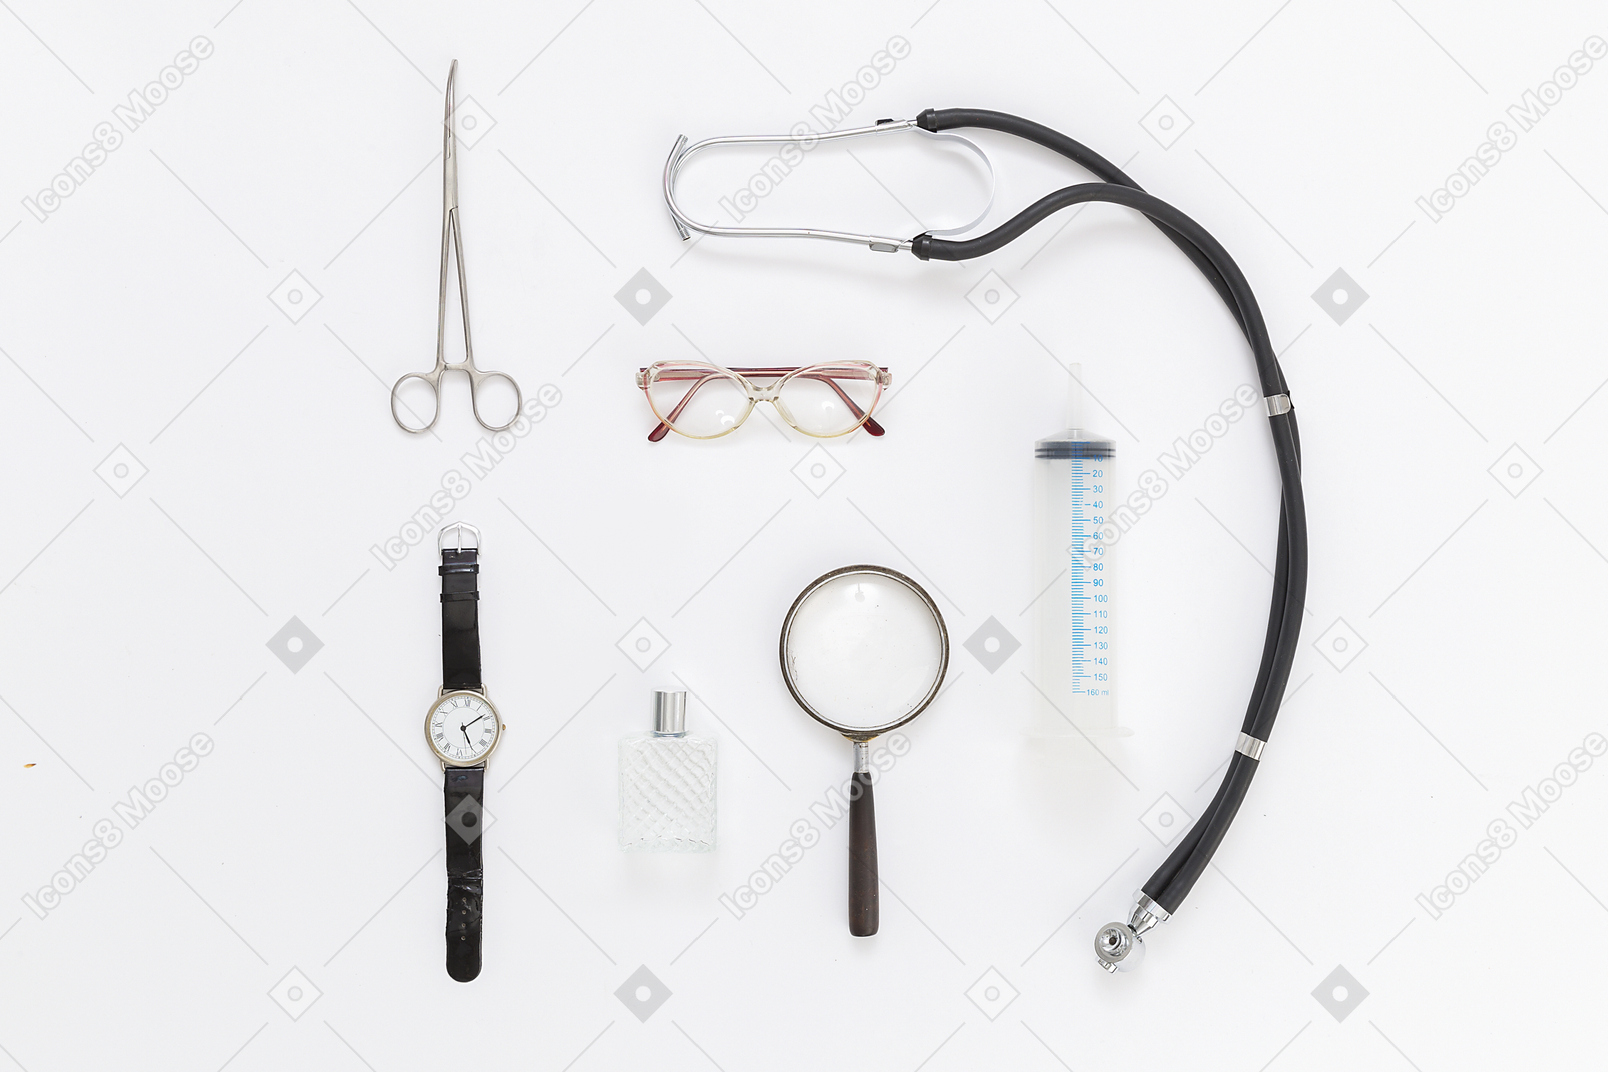 Doctor's equipment